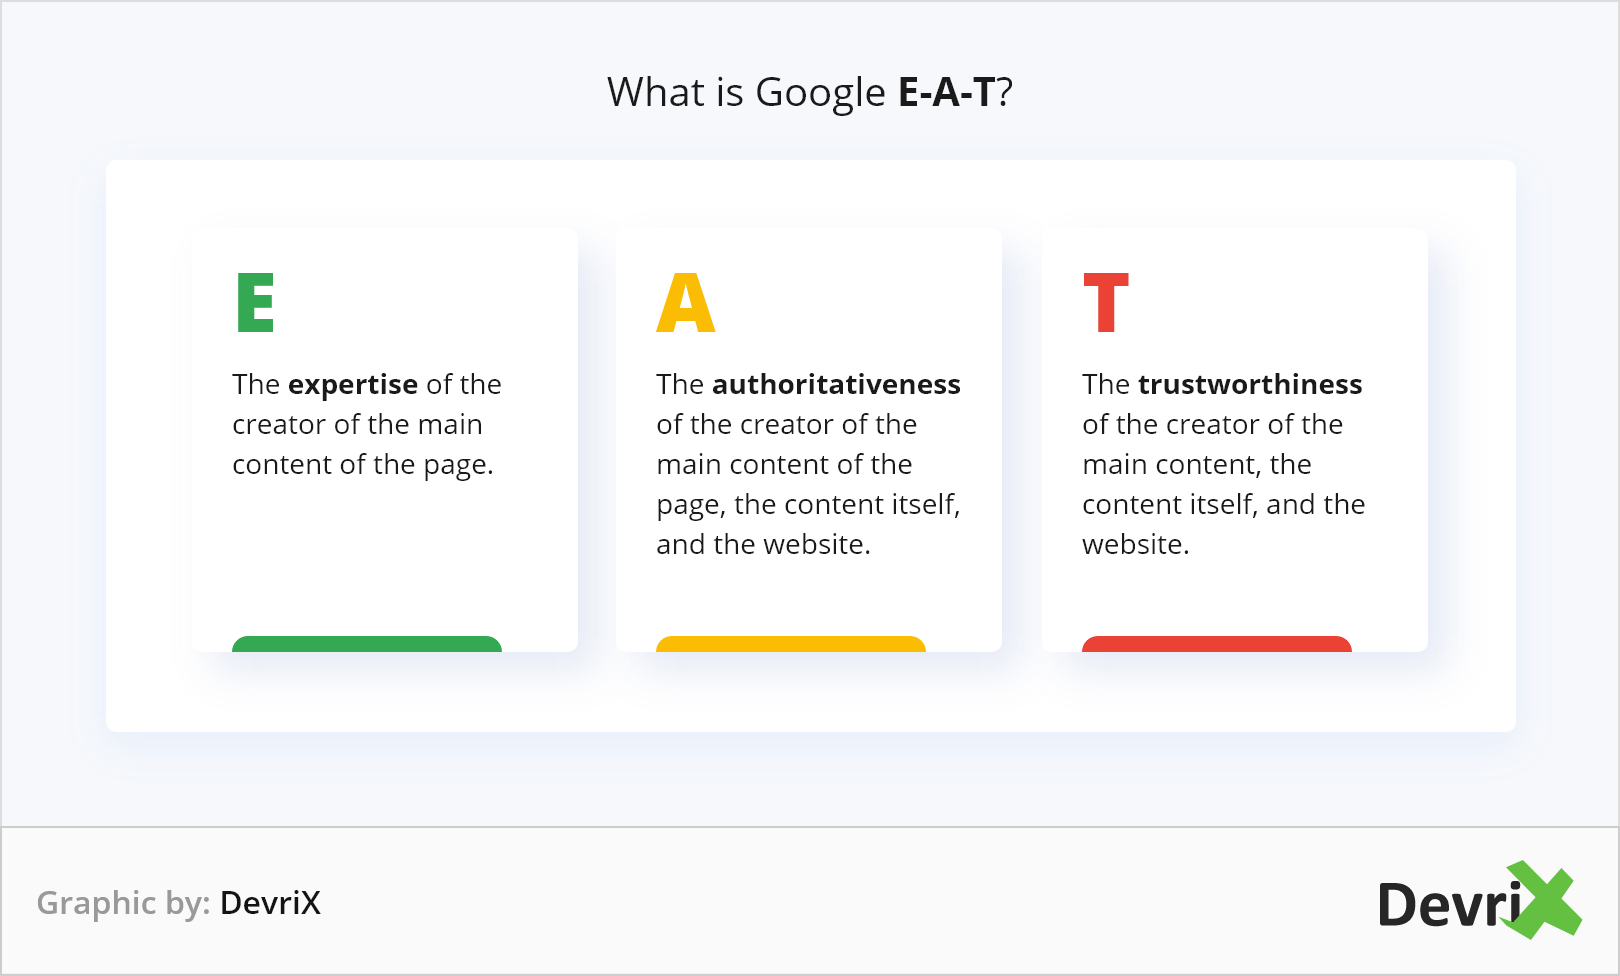 Google’s EAT framework